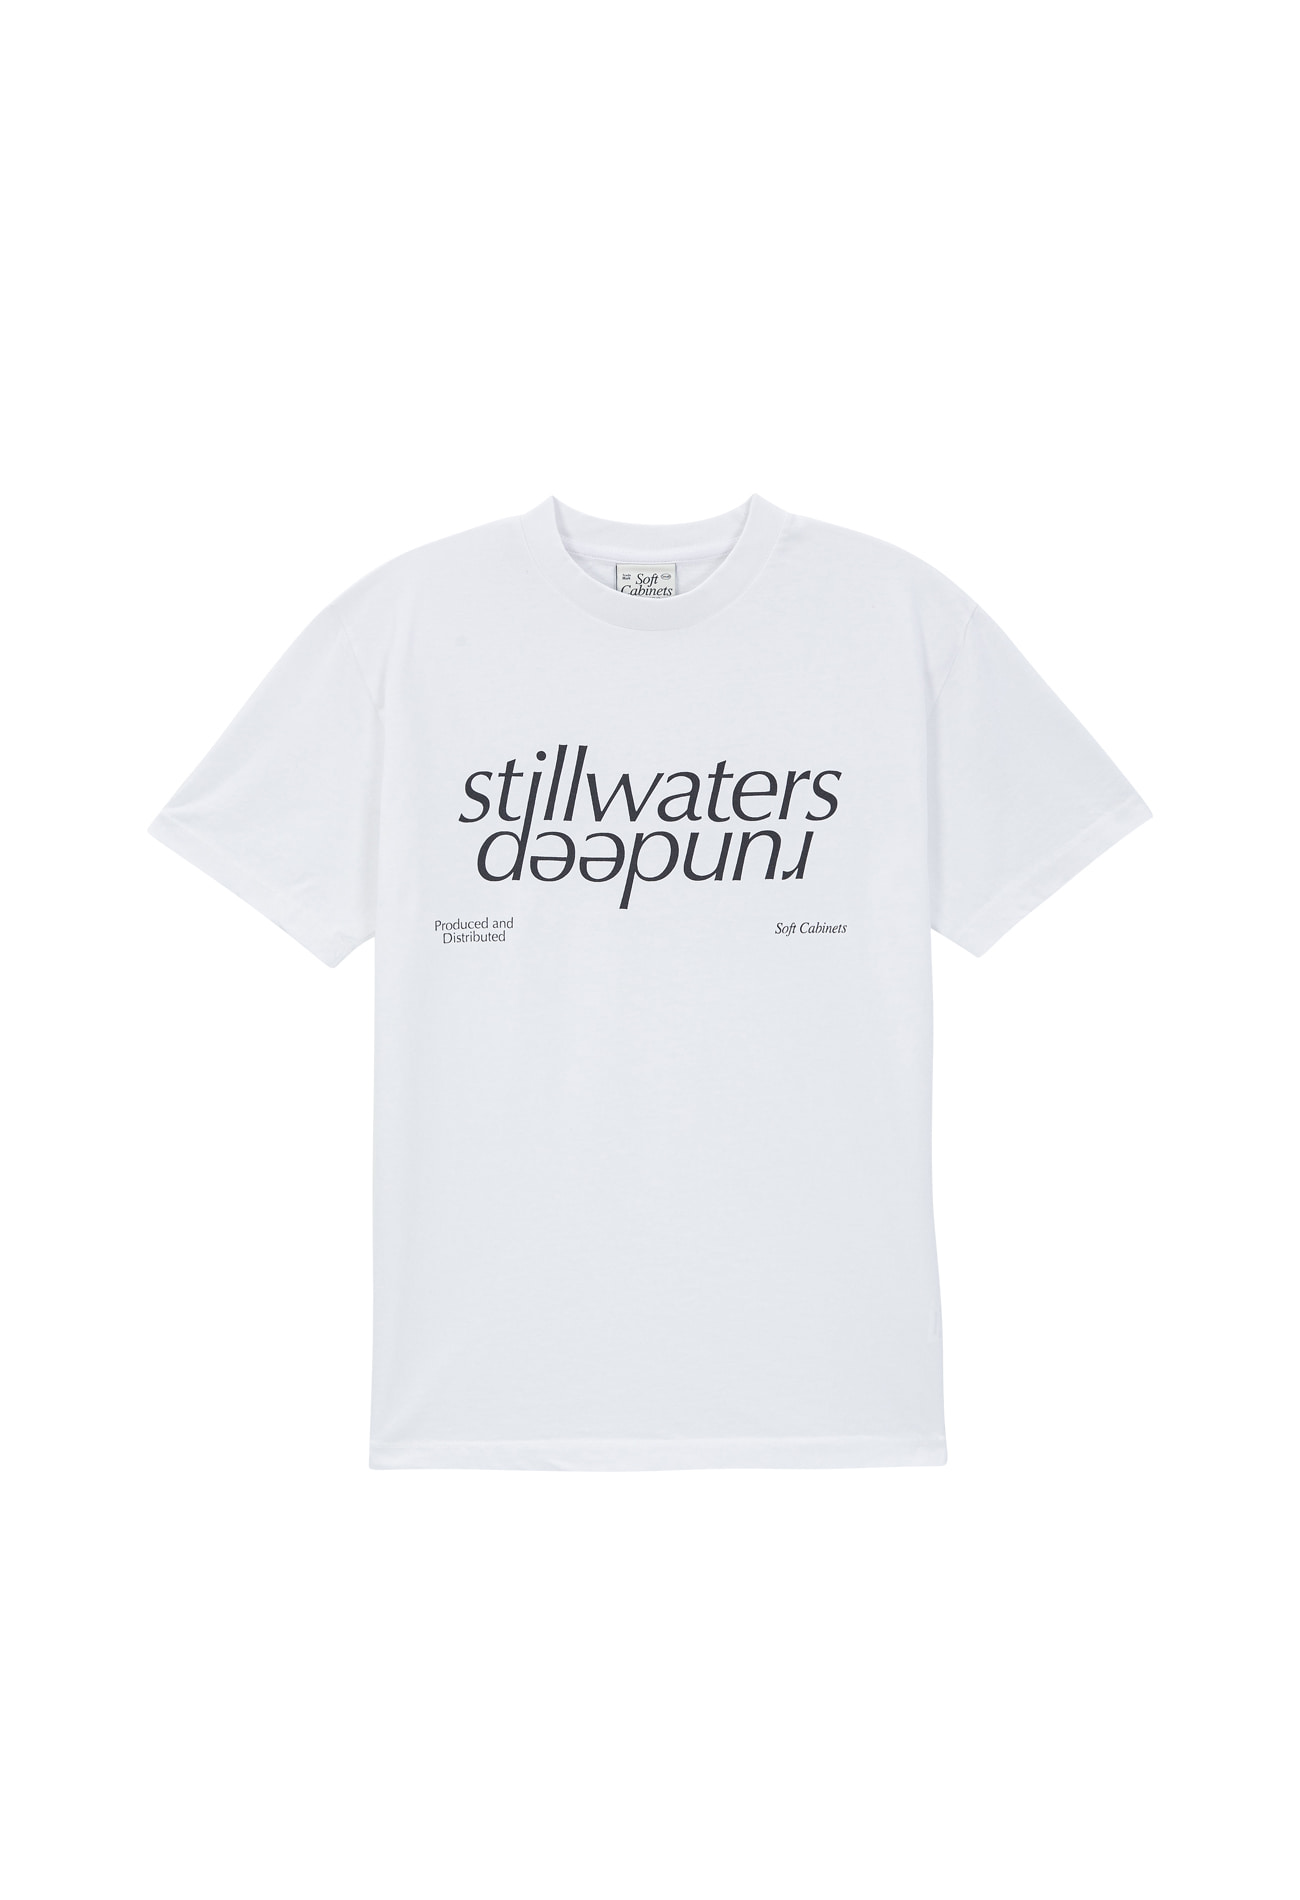 Stillwaters T-shirt White